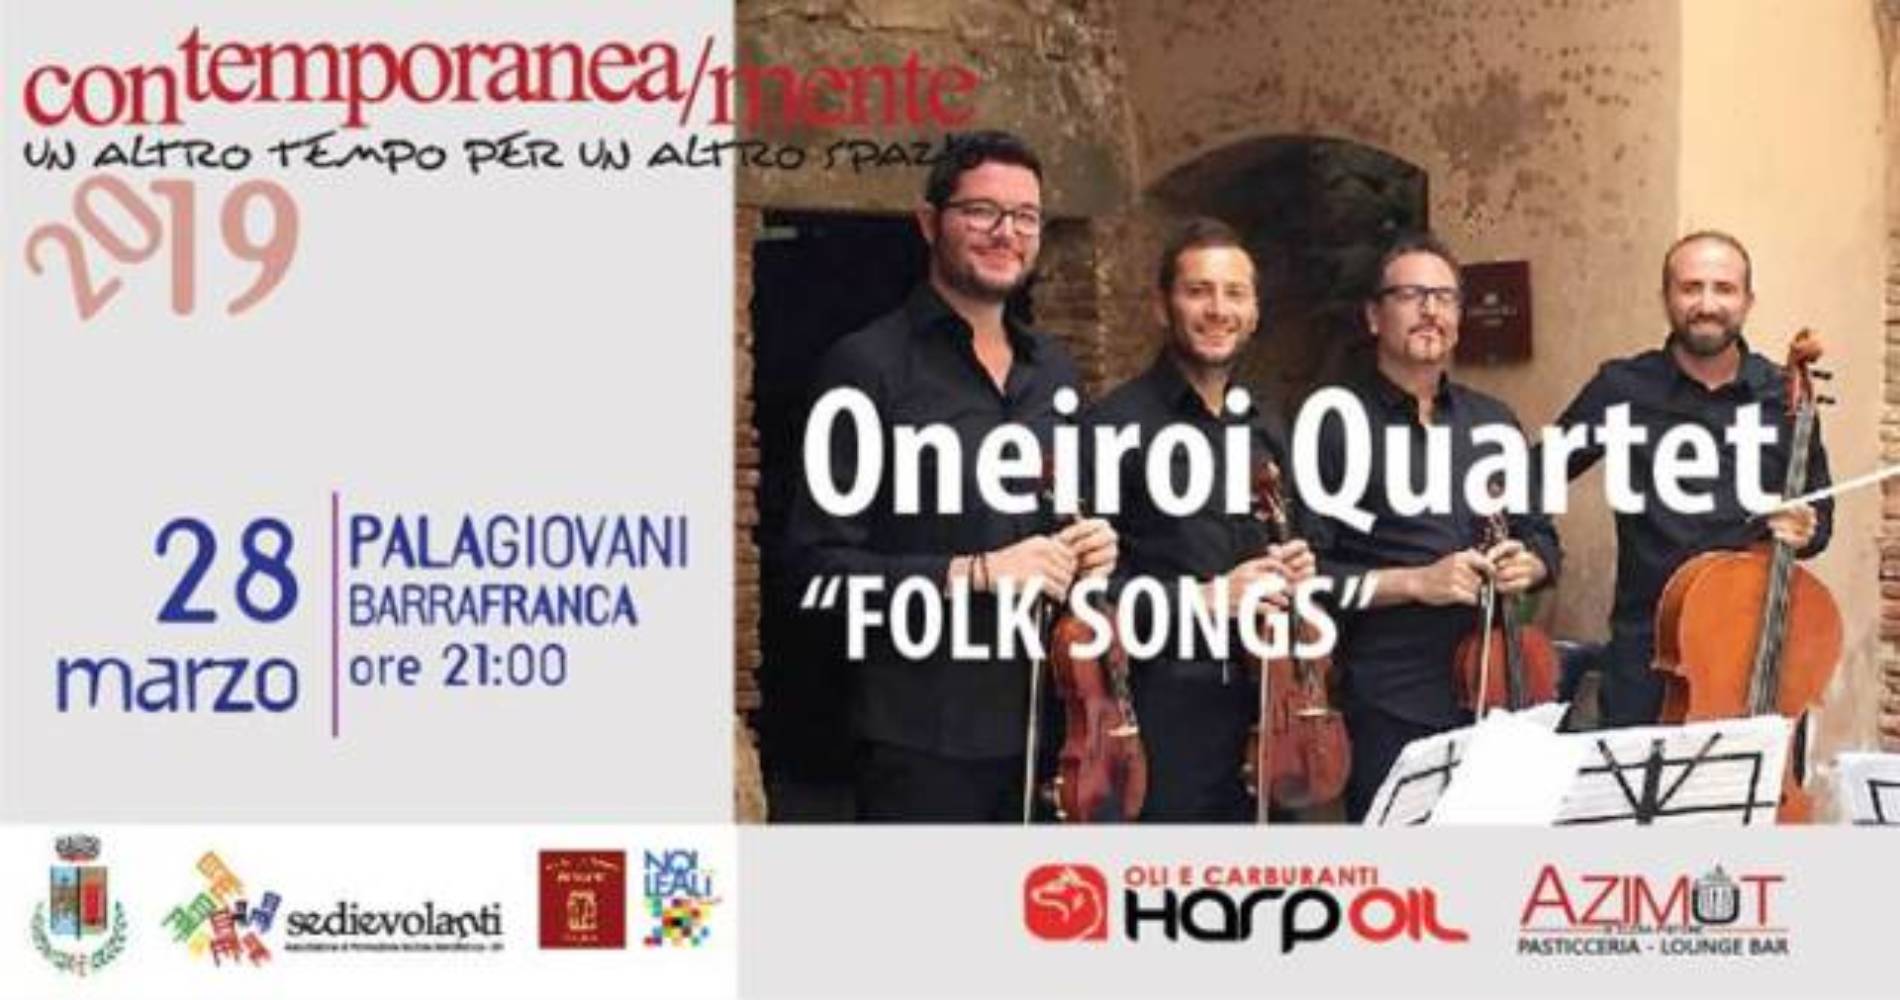 Giovedì 28 marzo, al Palagiovani di Barrafranca, gli Oneiroi Quartet in concerto